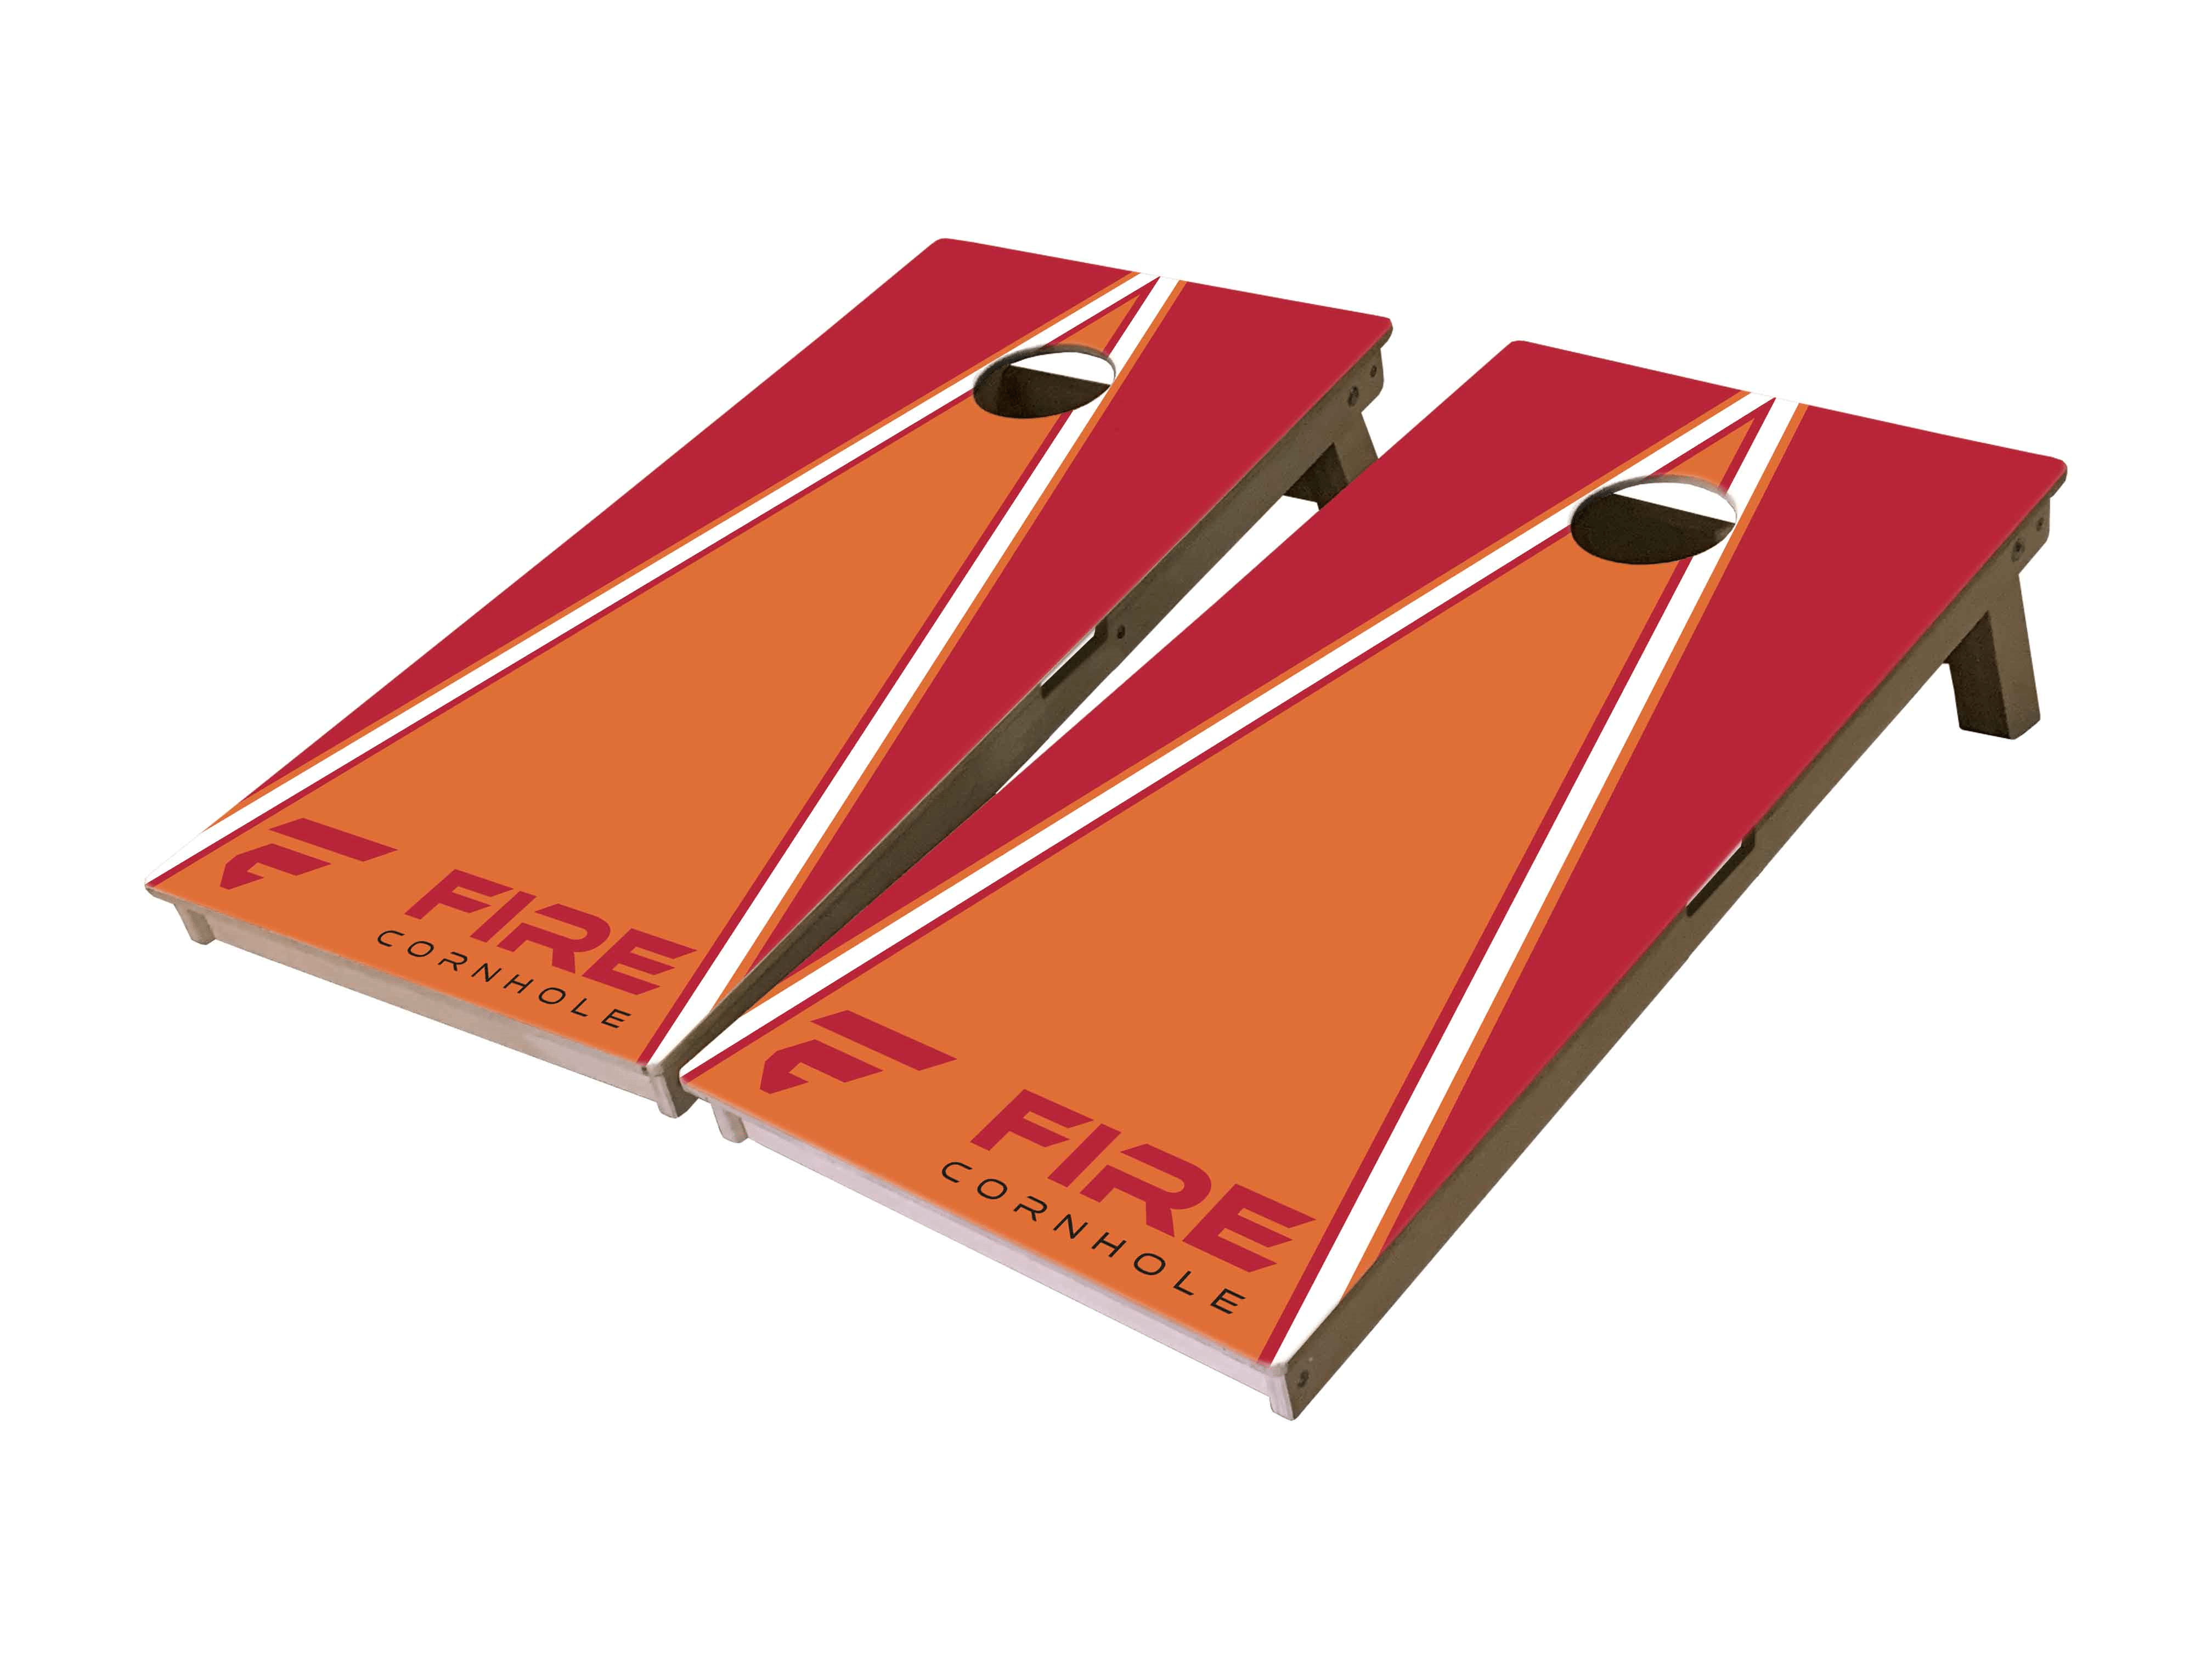 Fire Cornhole Mini Cornhole Boards with triangle design in orange and red